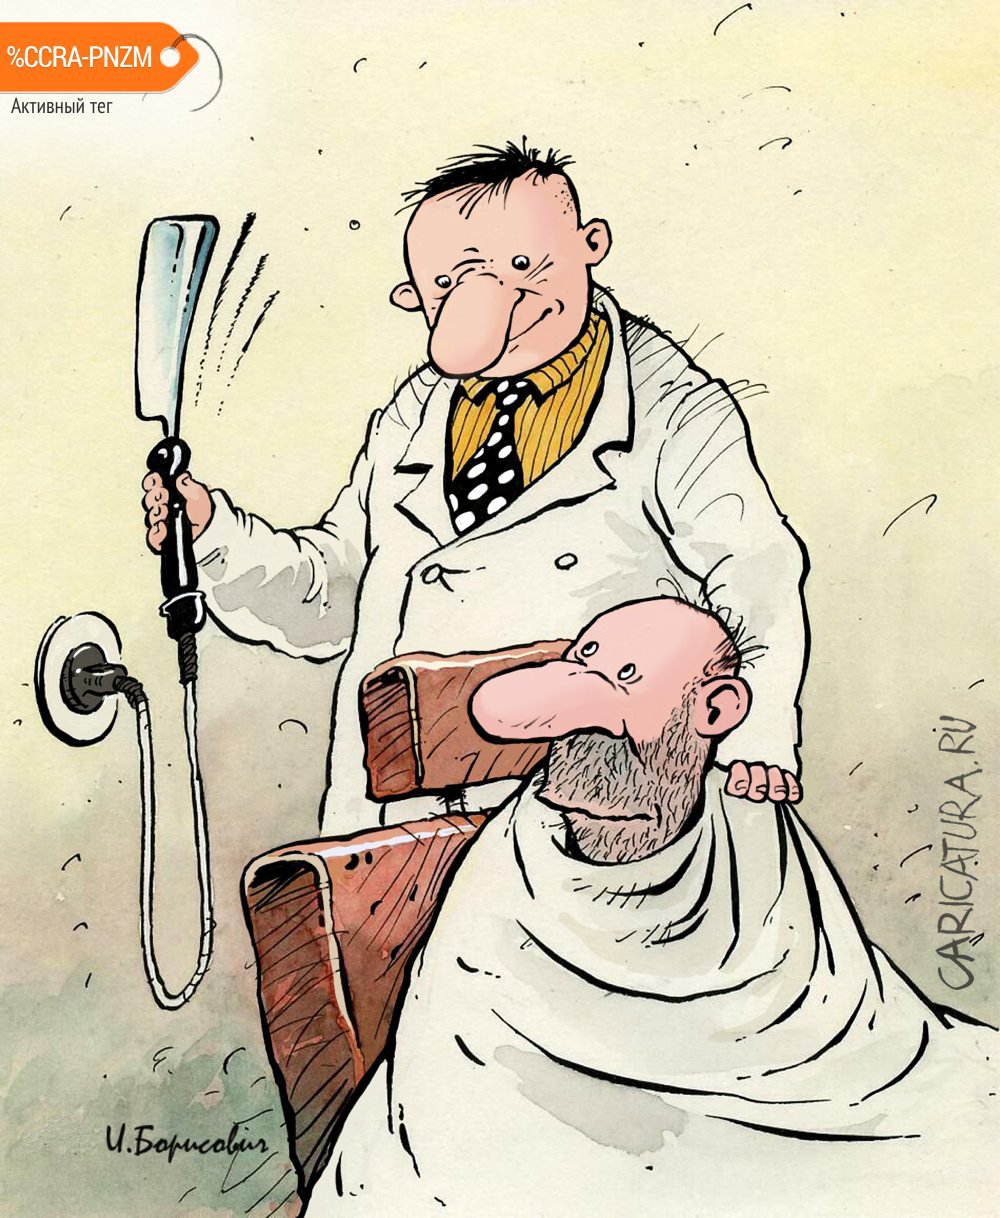 Карикатура "Опасная бритва", Игорь Елистратов